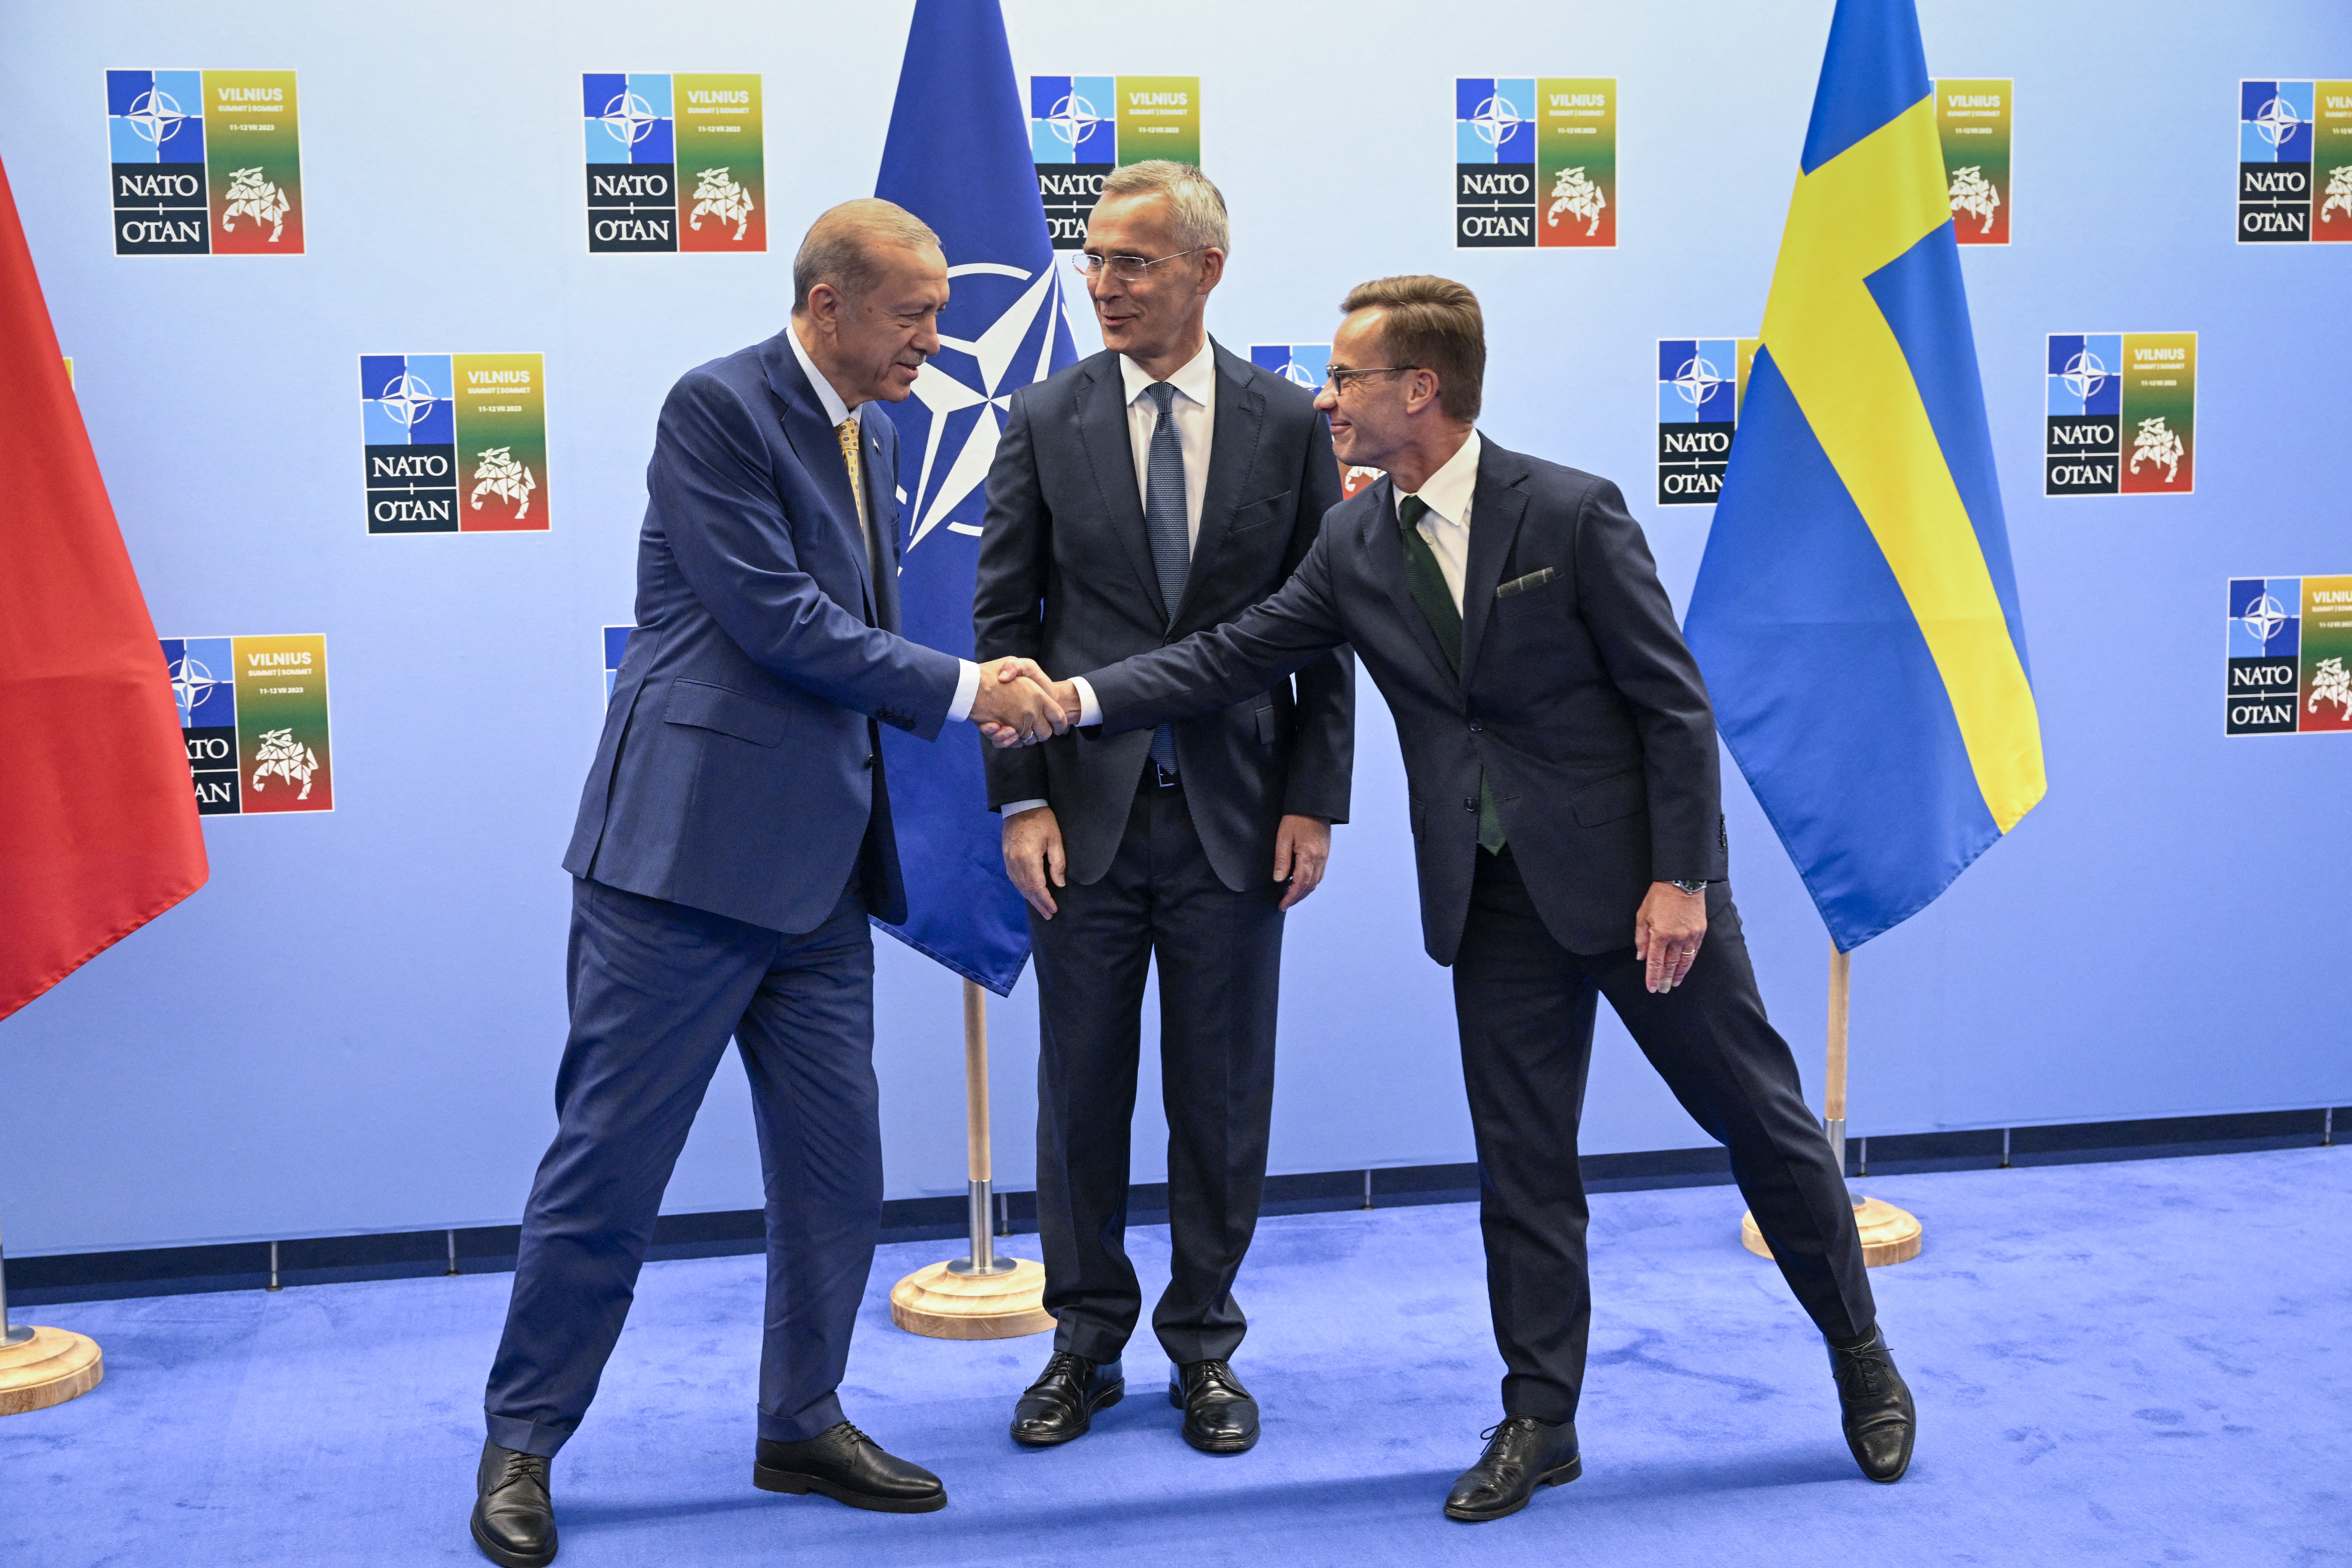 Mit nyerhetne a NATO, ha nem blokkolnák Orbánék a svédek csatlakozását?